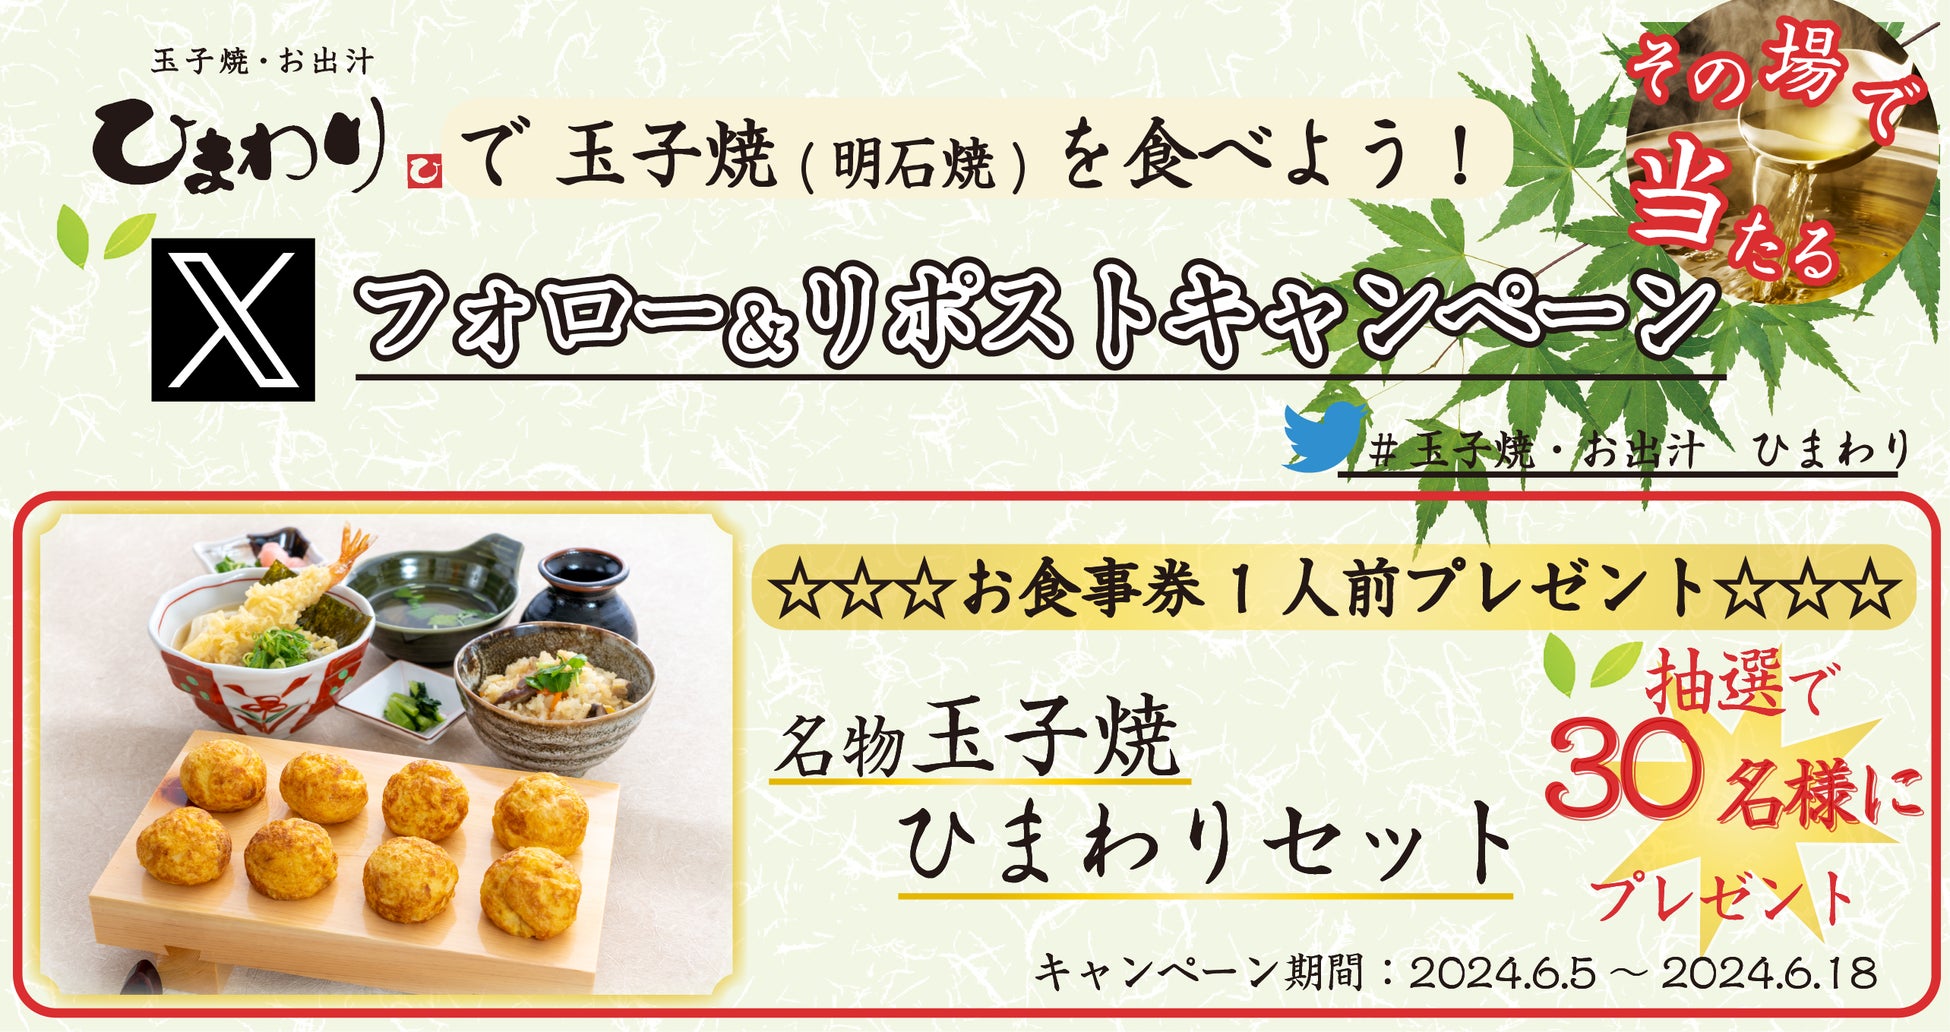 日本人の心！漬物を”70%以上”の人が週に１回以上食べている！漬物で好きな野菜ランキングが明らかに